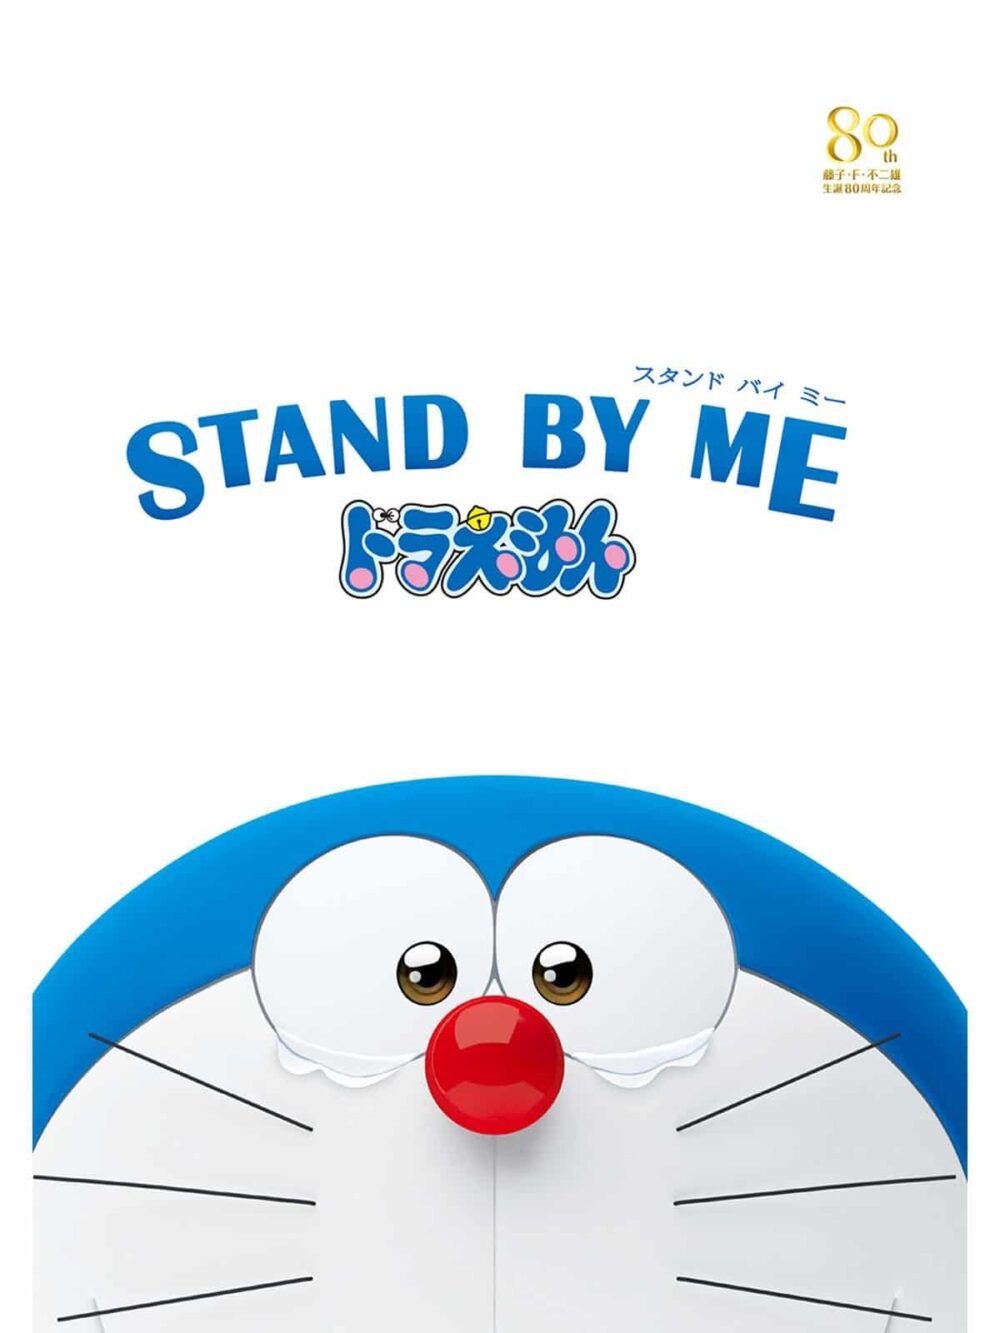 hinh anh phim Stand by me e1581340551386 - Doraemon và hành trình trở thành huyền thoại nhiều gian nan